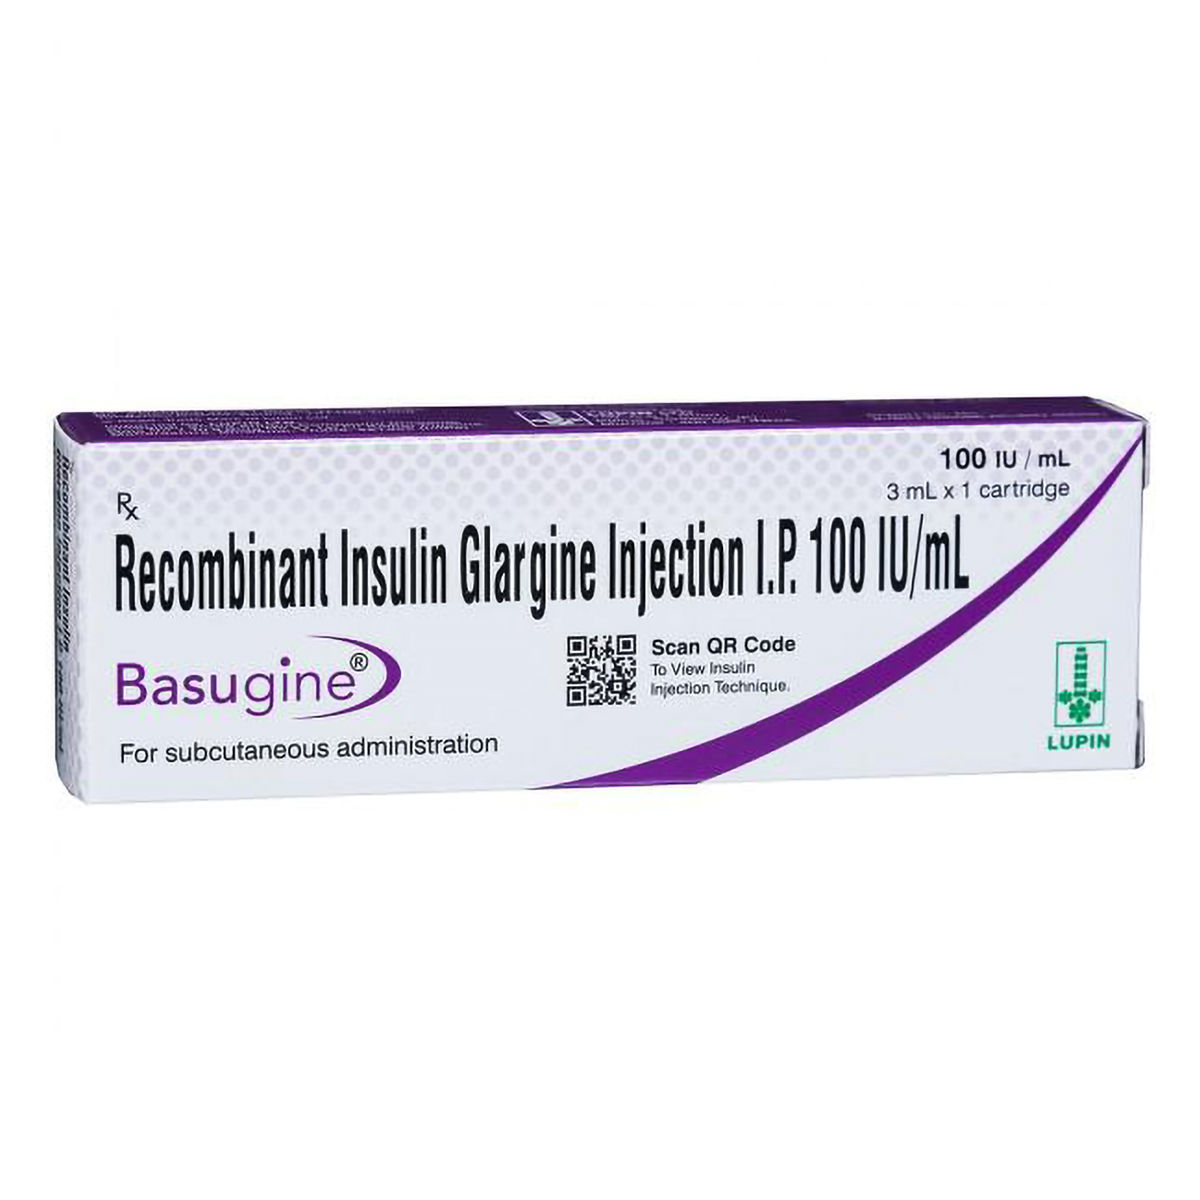 Buy Basugine 100IU/ml Injection 3 ml Online